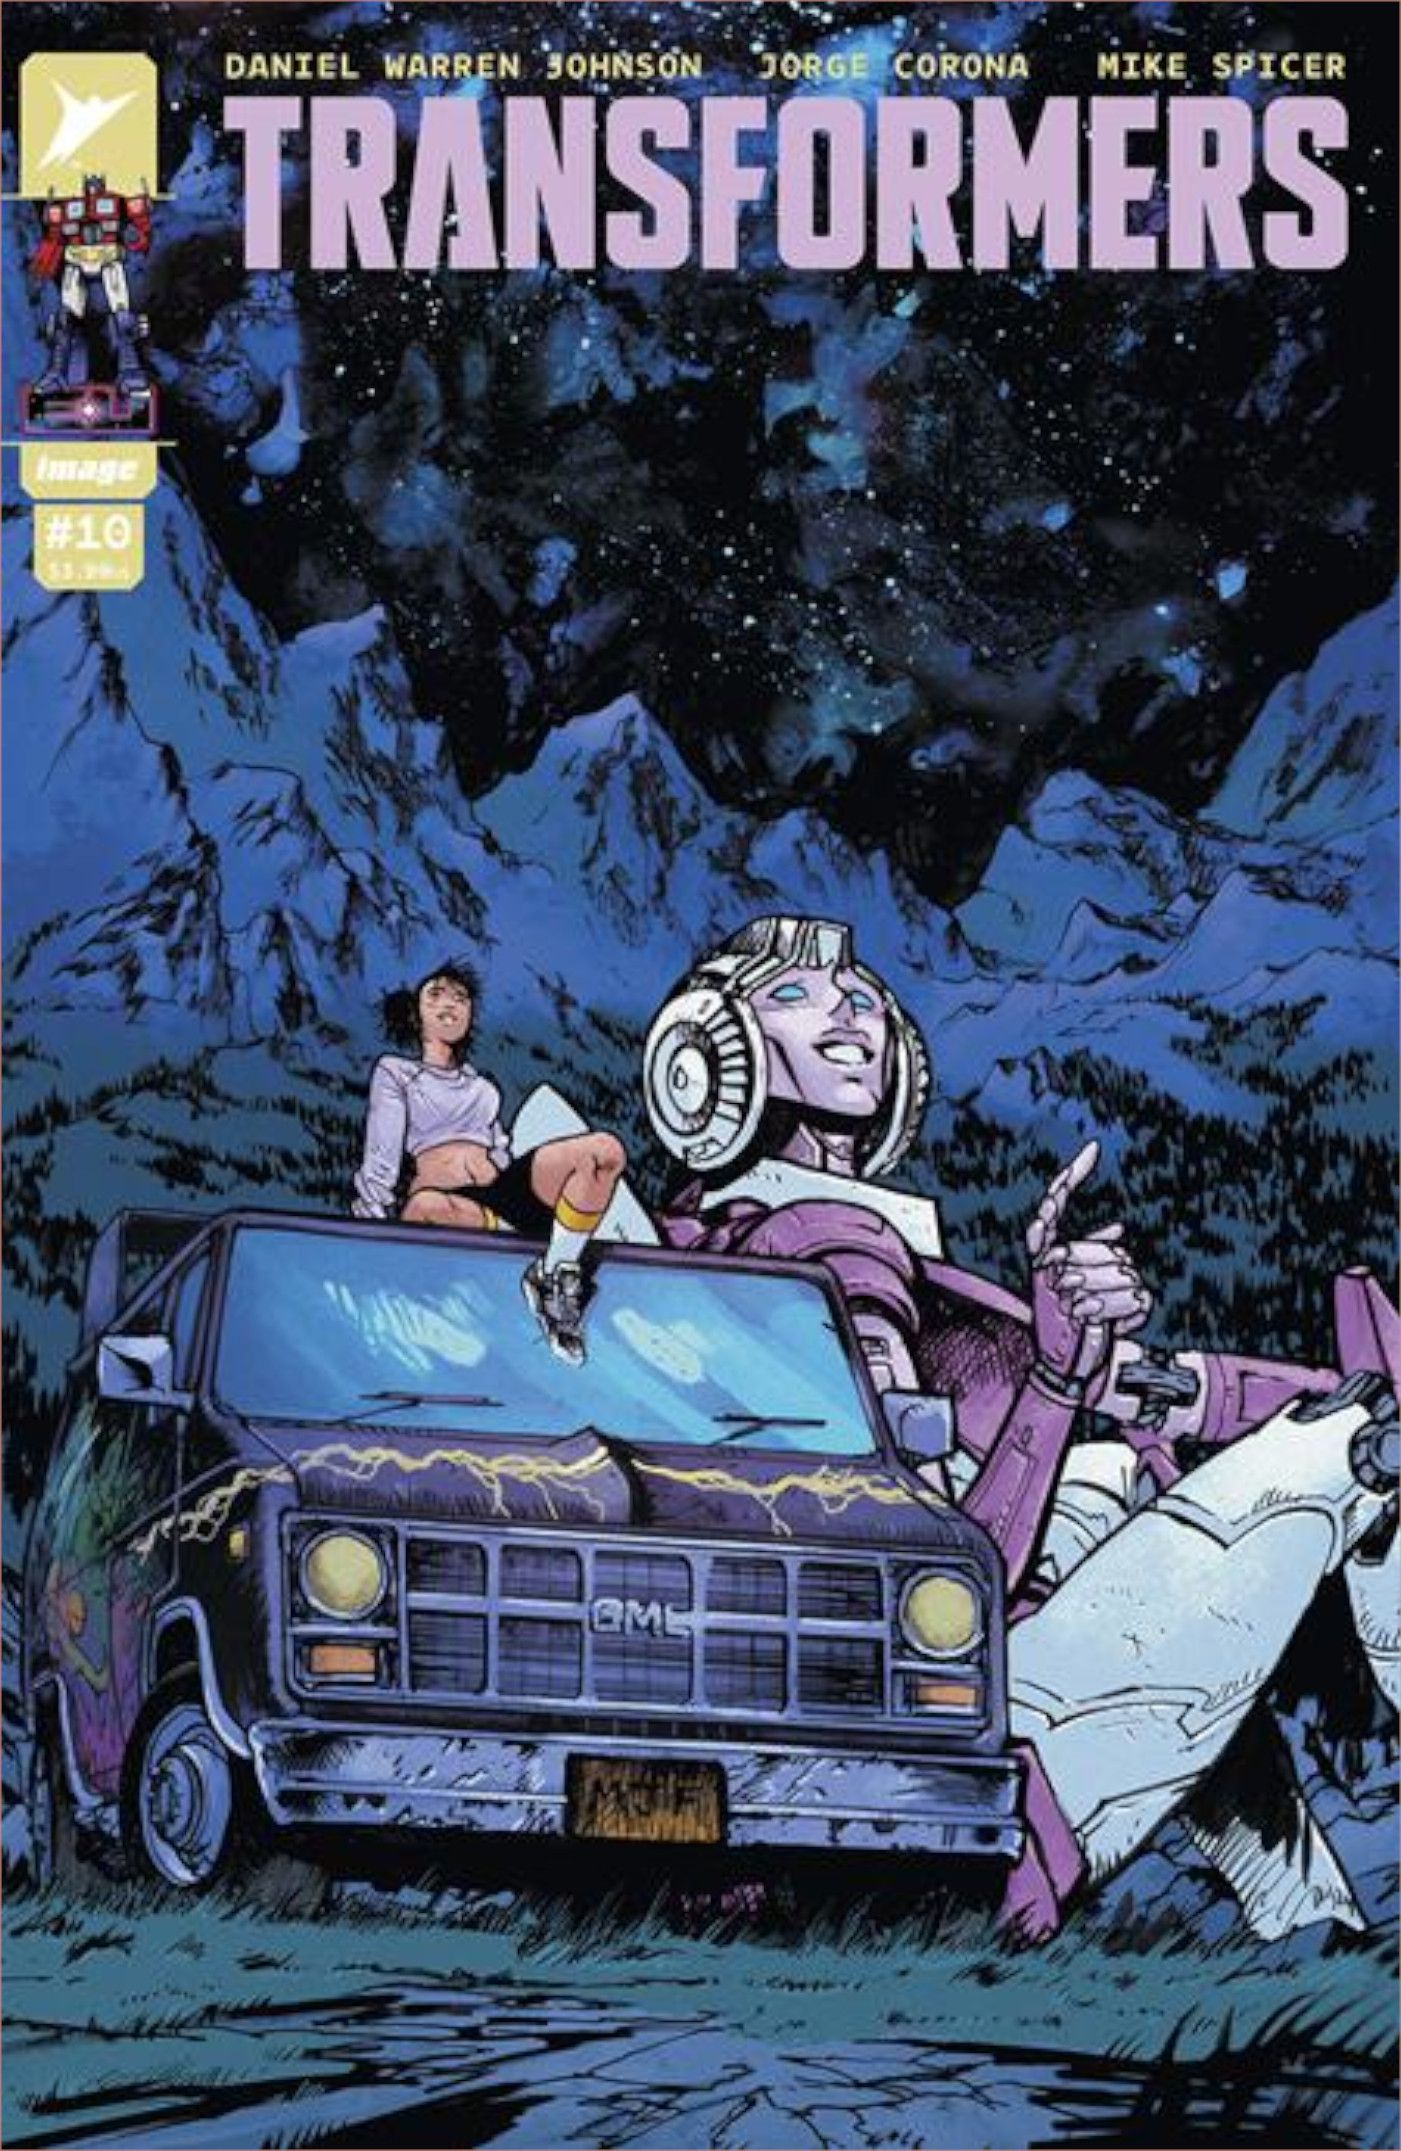 Capa de Transformers #10 por Daniel Warren Johnson, personagens humanos e Autobots olhando para as estrelas.